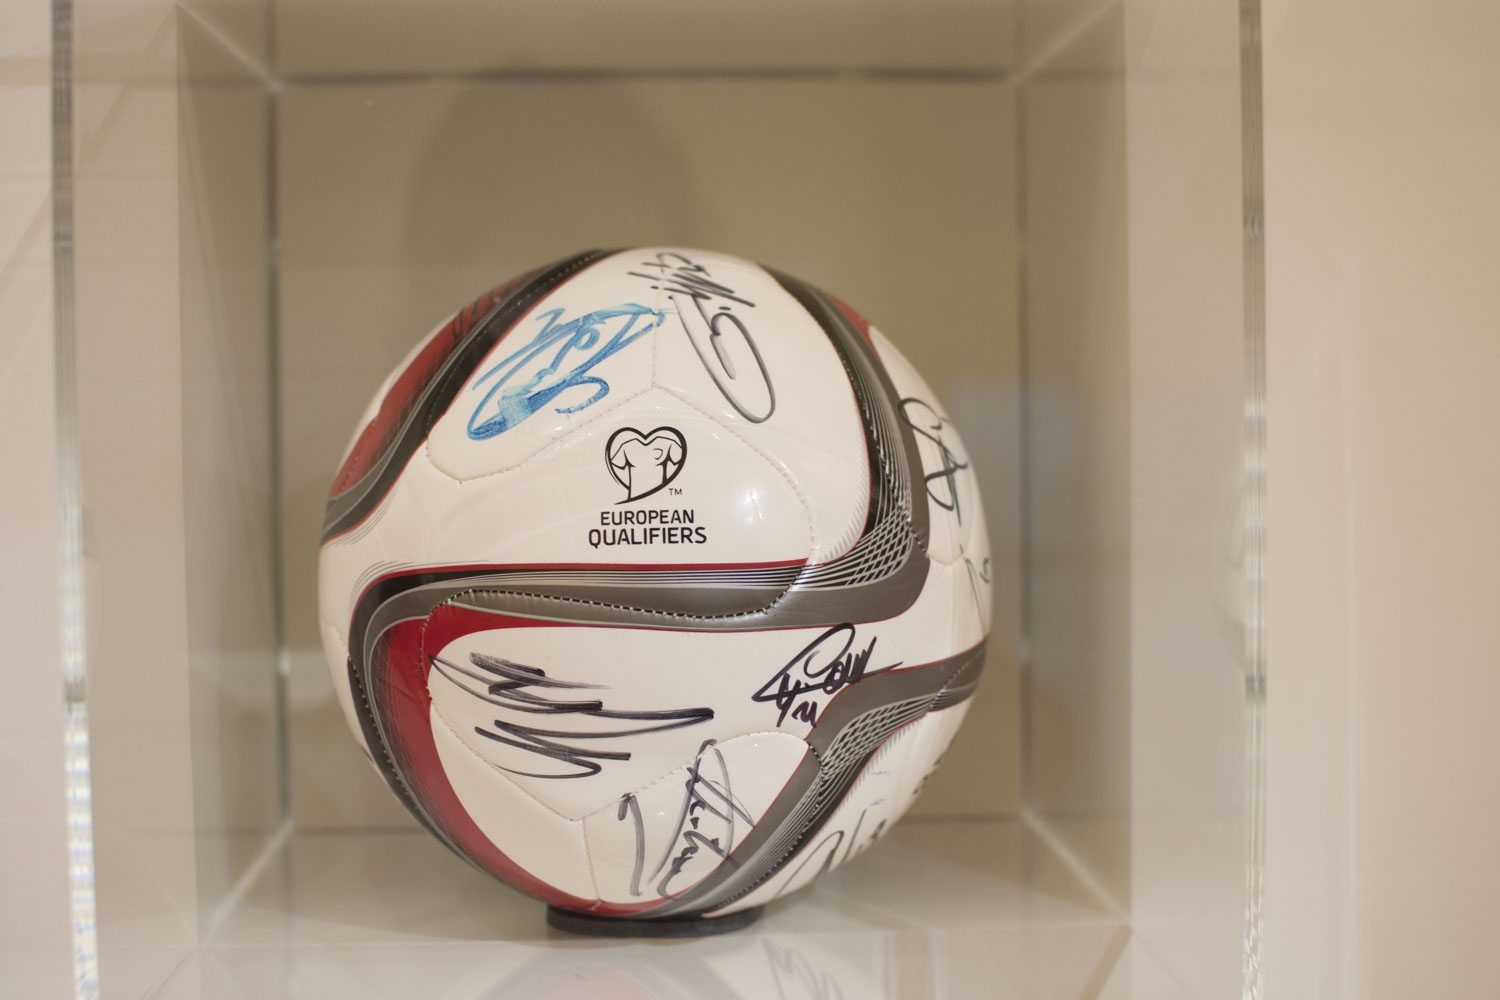 Un ballon de foot signé par les Diables rouges, l’équipe nationale belge de football